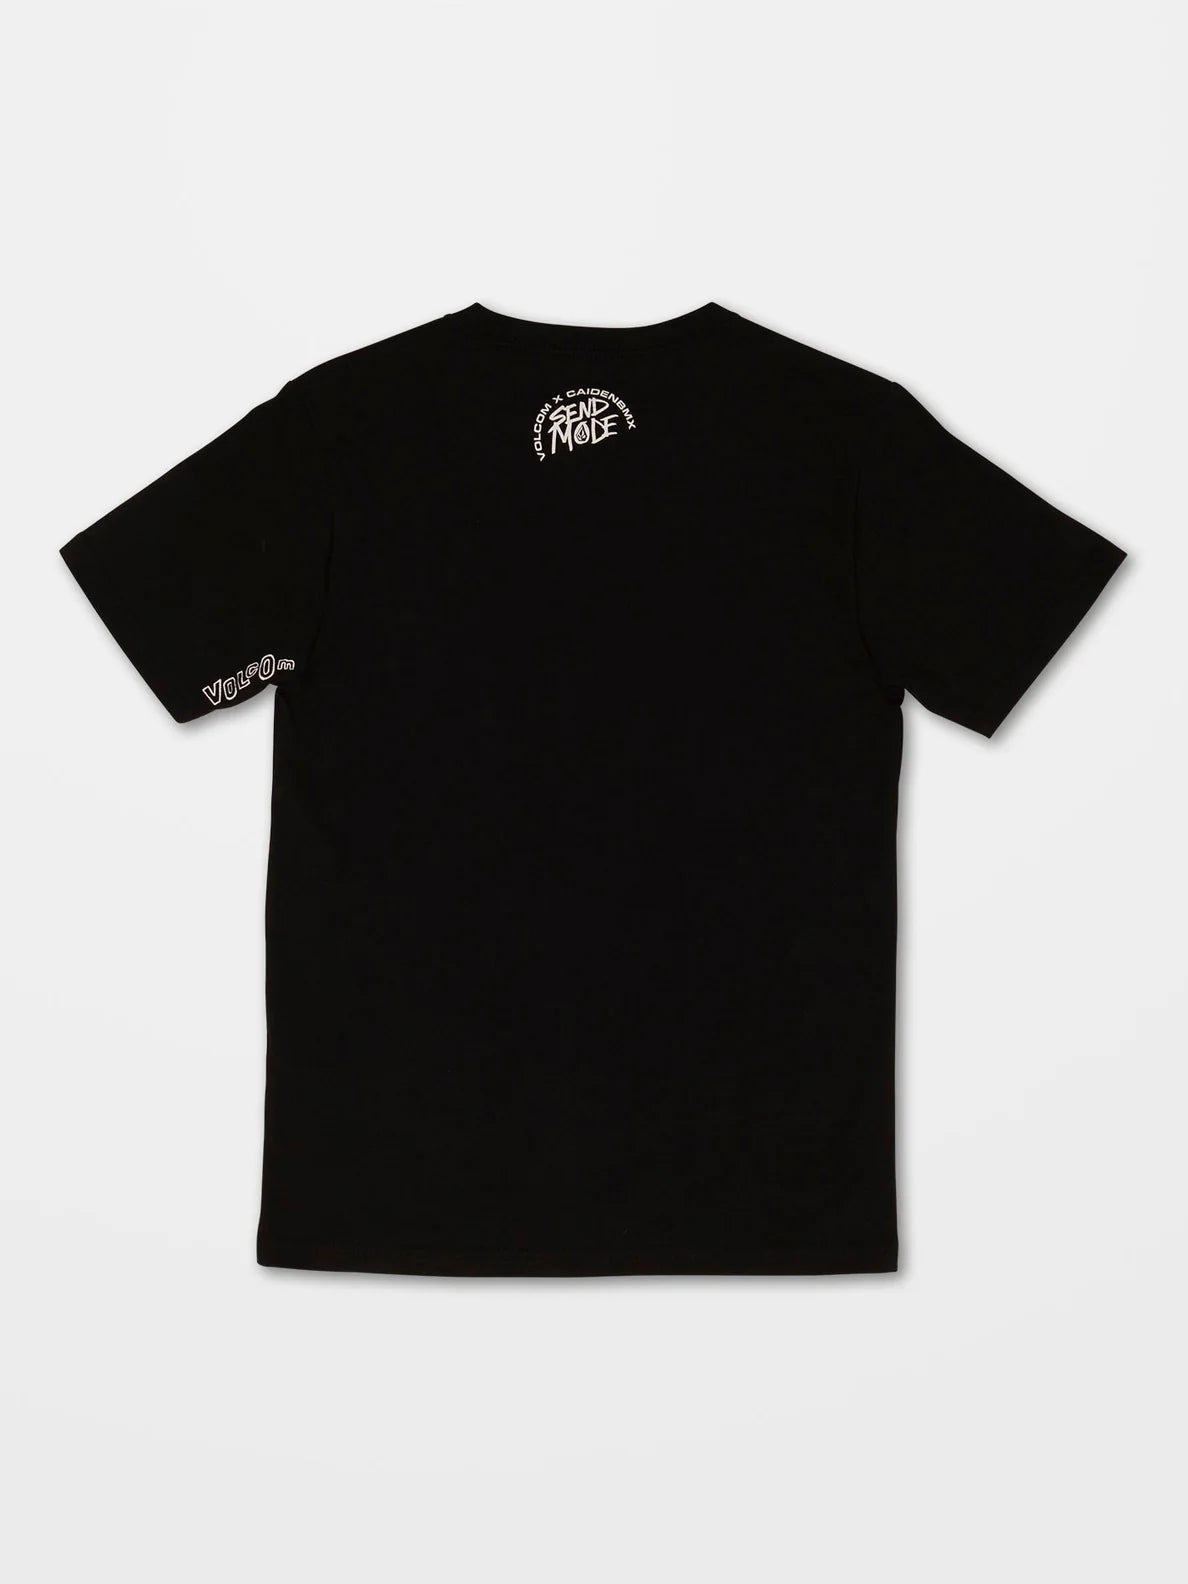 Camiseta niño Volcom Send Mode Black | surfdevils.com